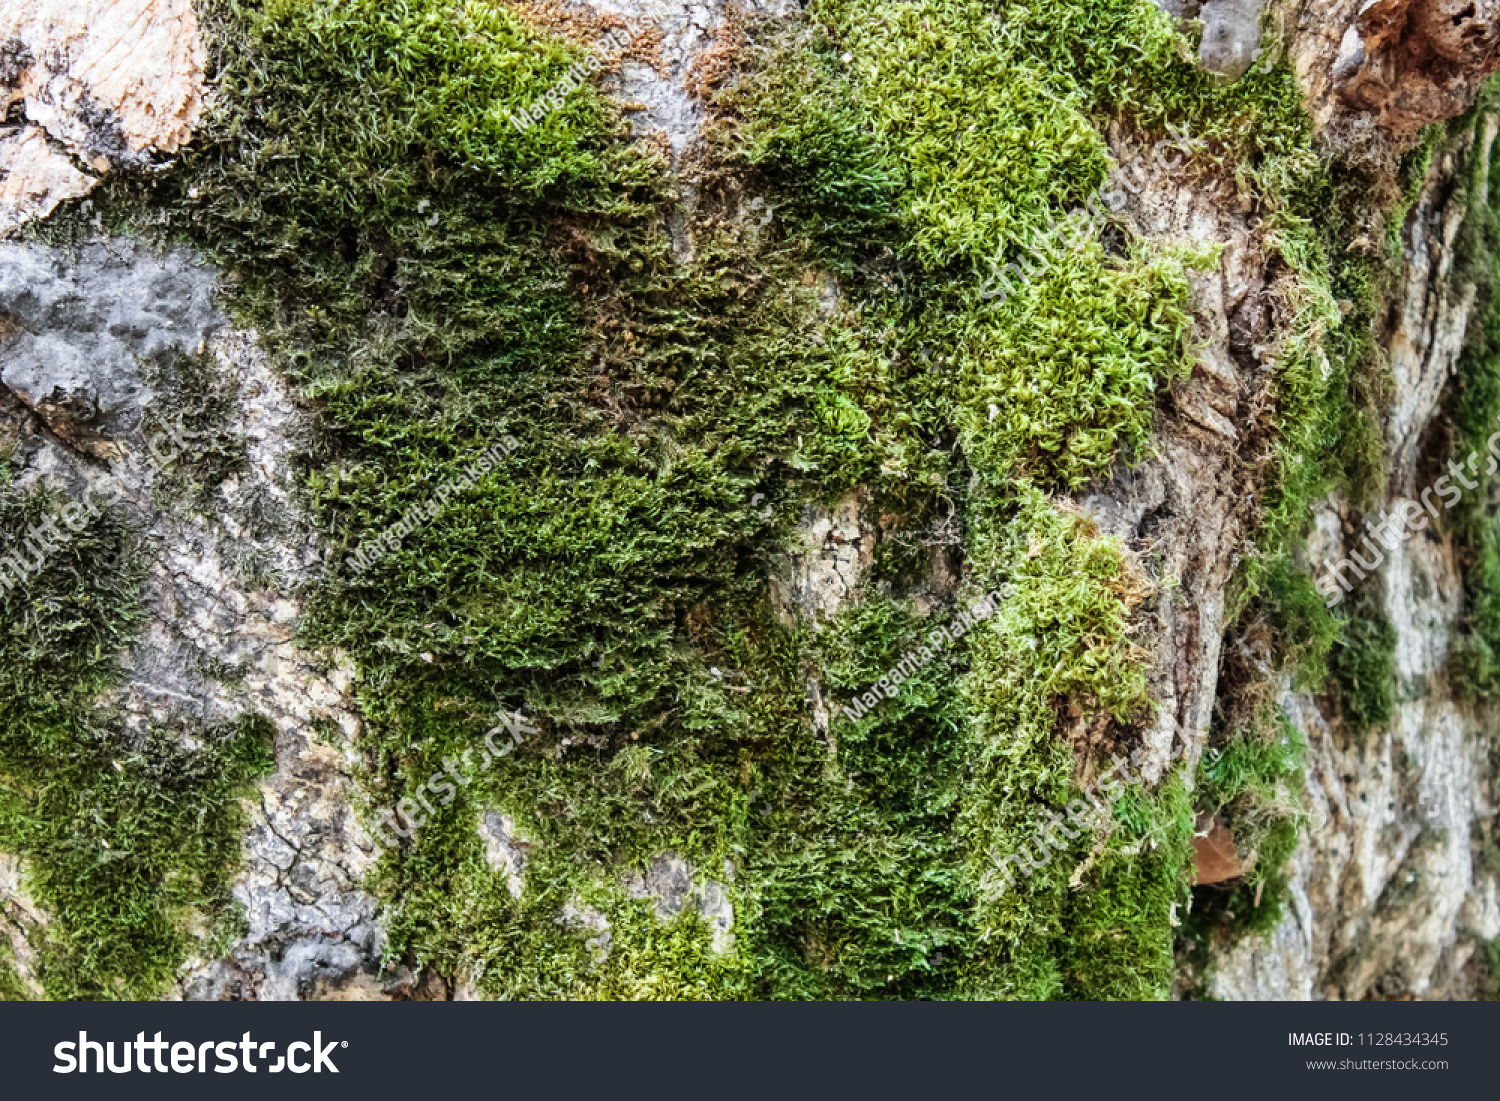 Texture of Moss. Fon Moss. Green moss on a tree, moss background #1128434345